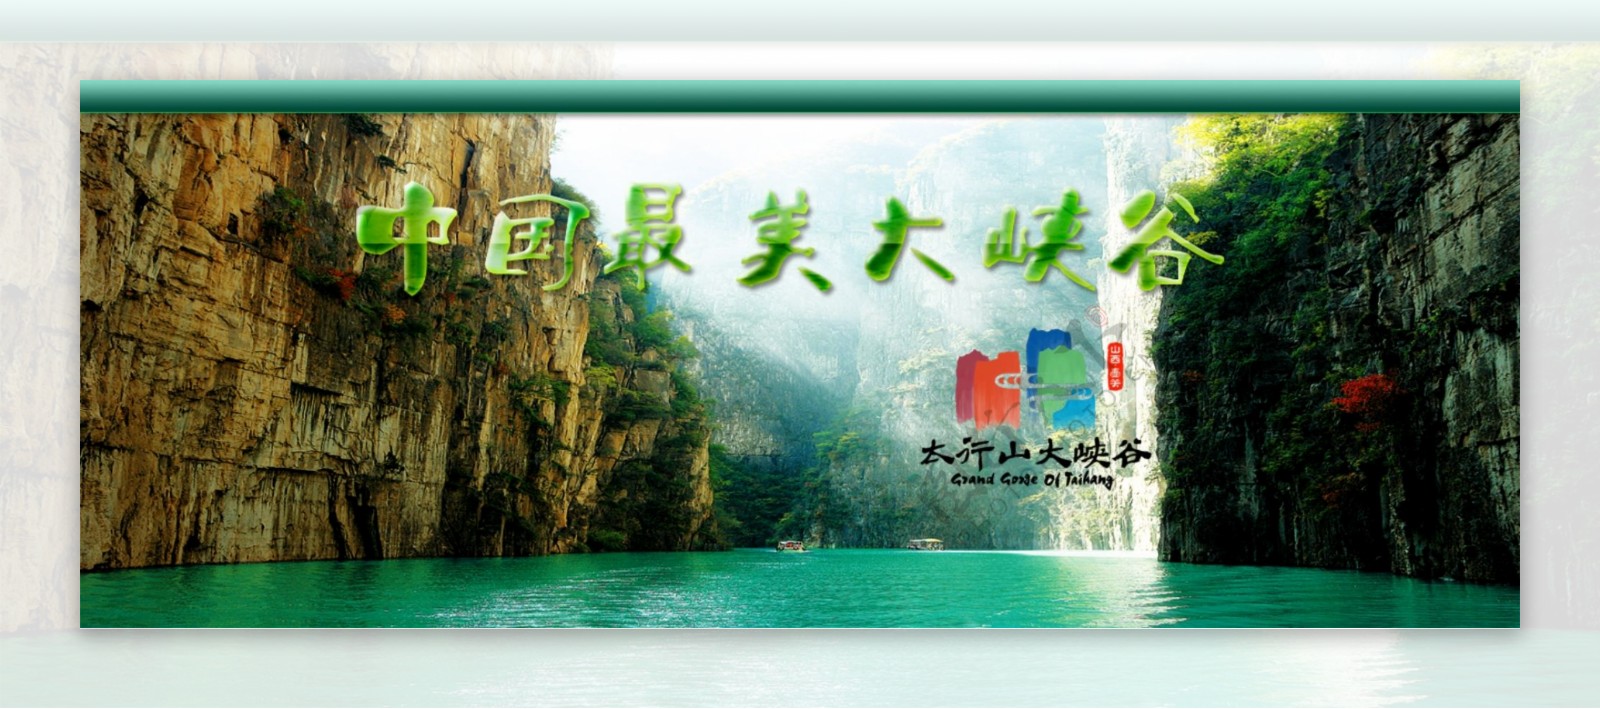 中国壶关大峡谷图片